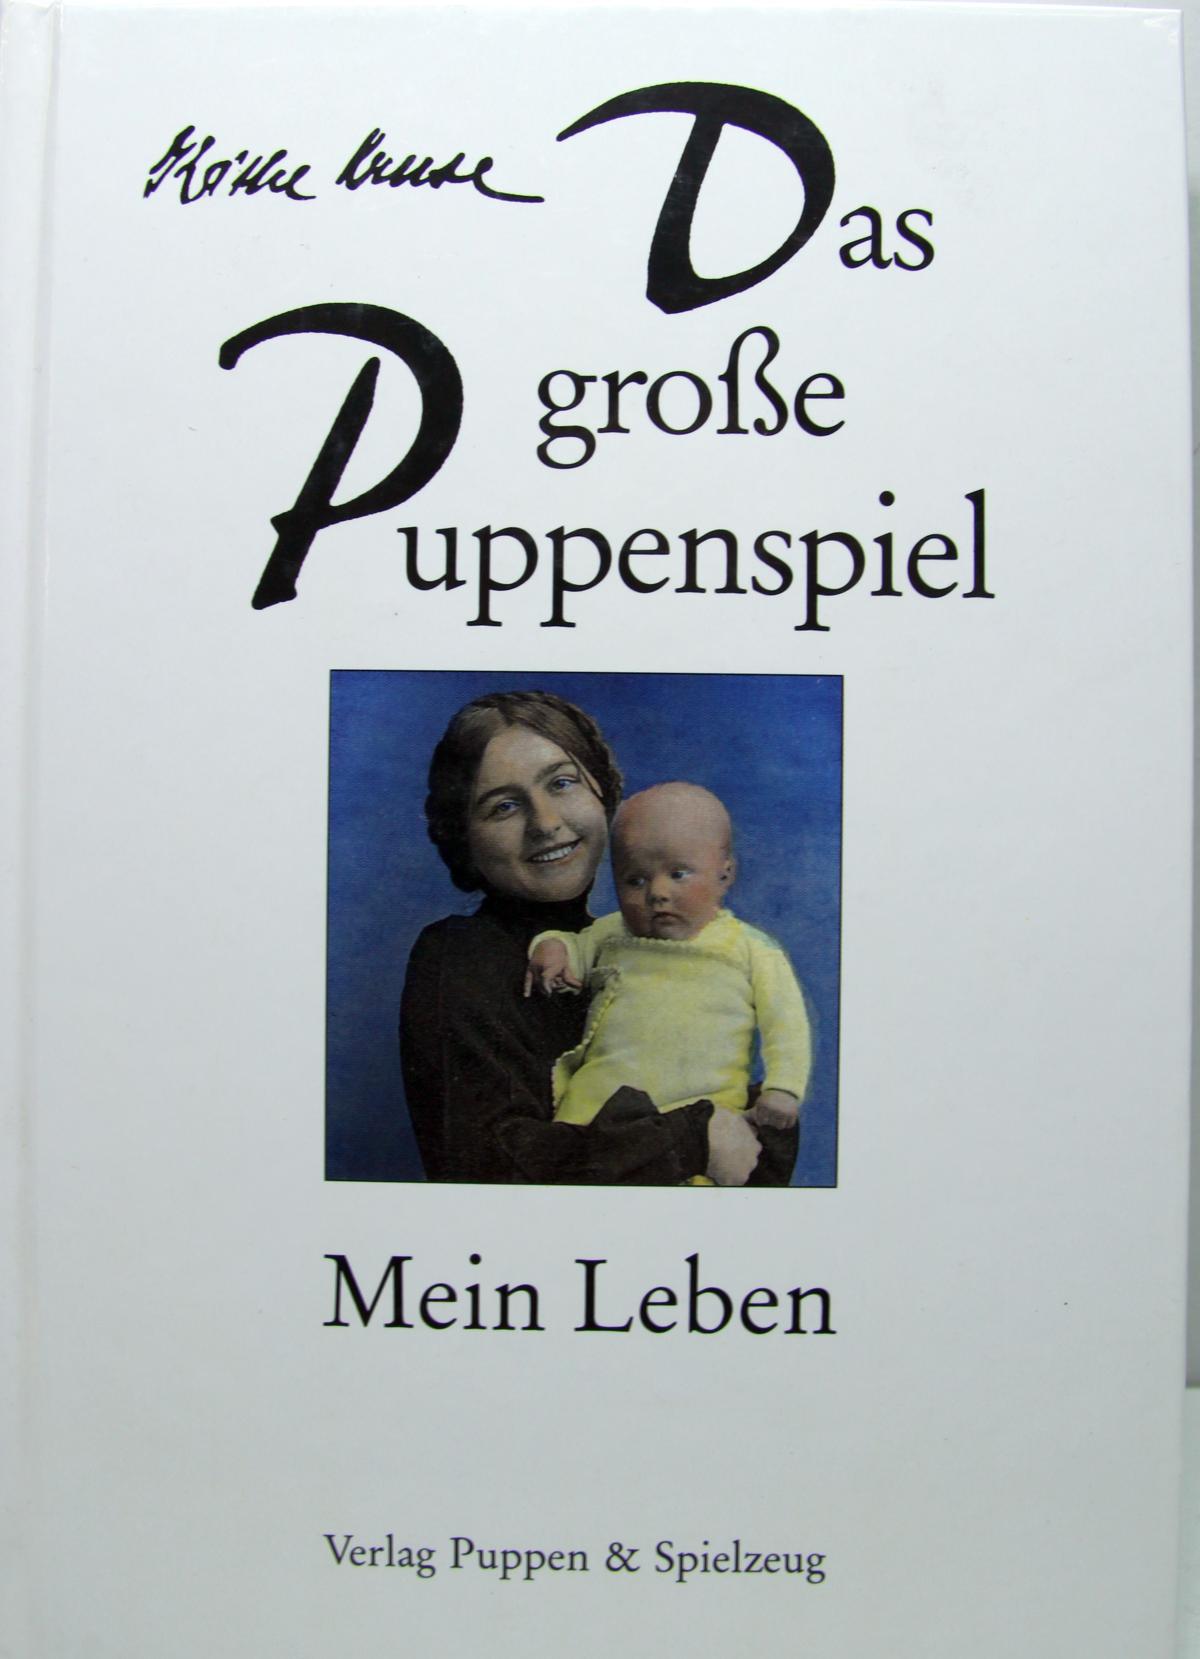 Buch "Das große Puppenspiel" Mein Leben K. Kruse